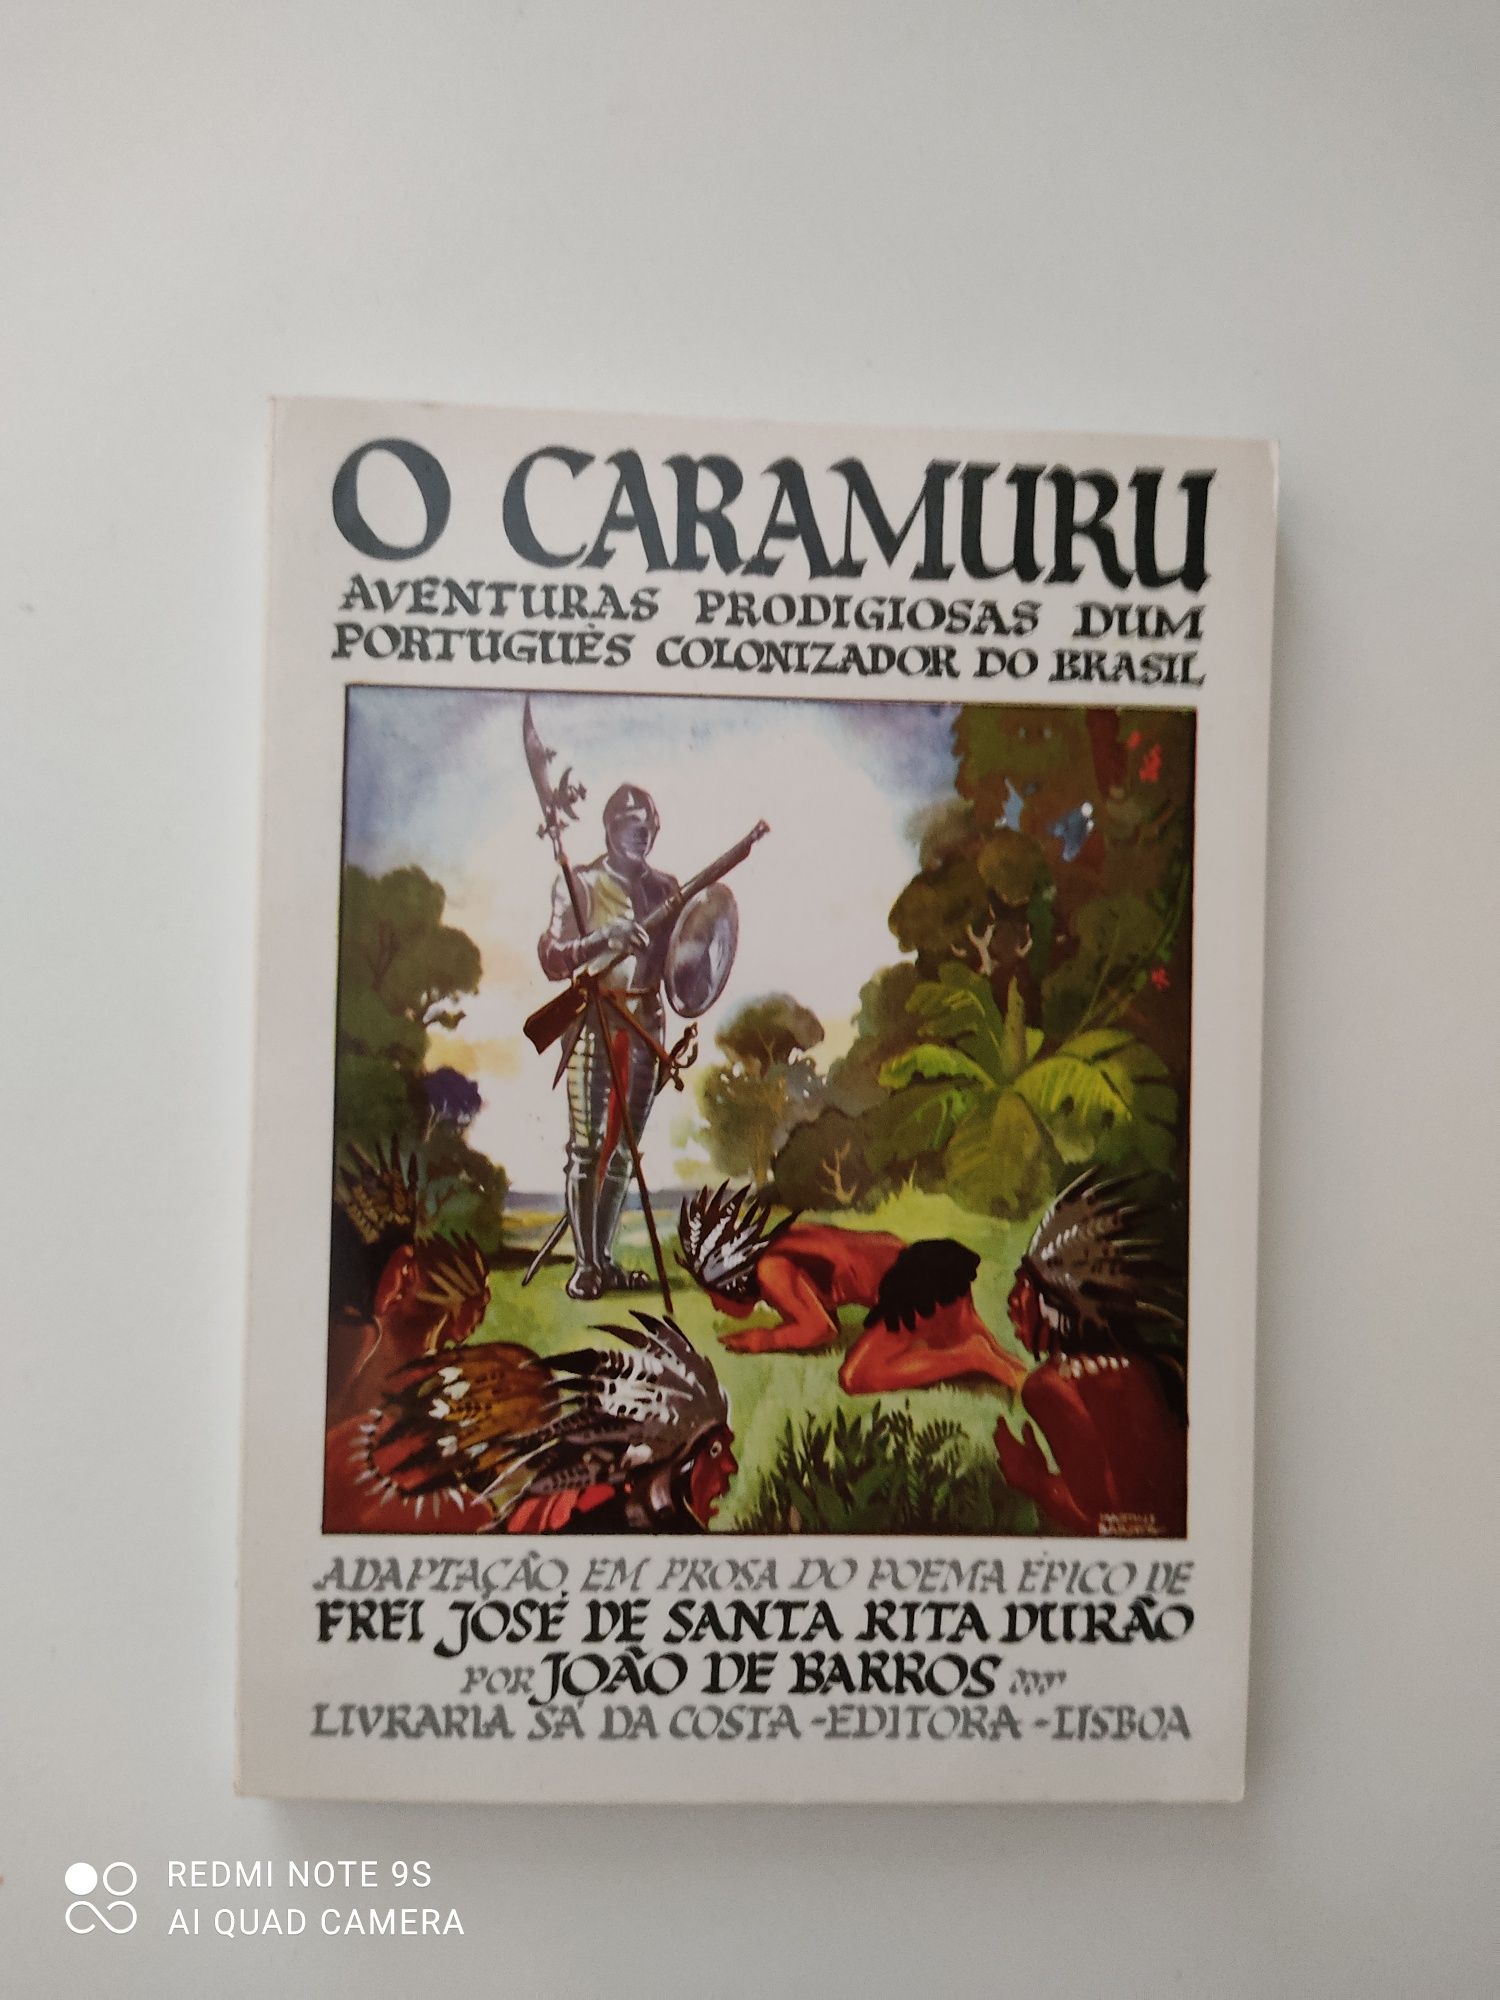 Livro "O Caramuru"